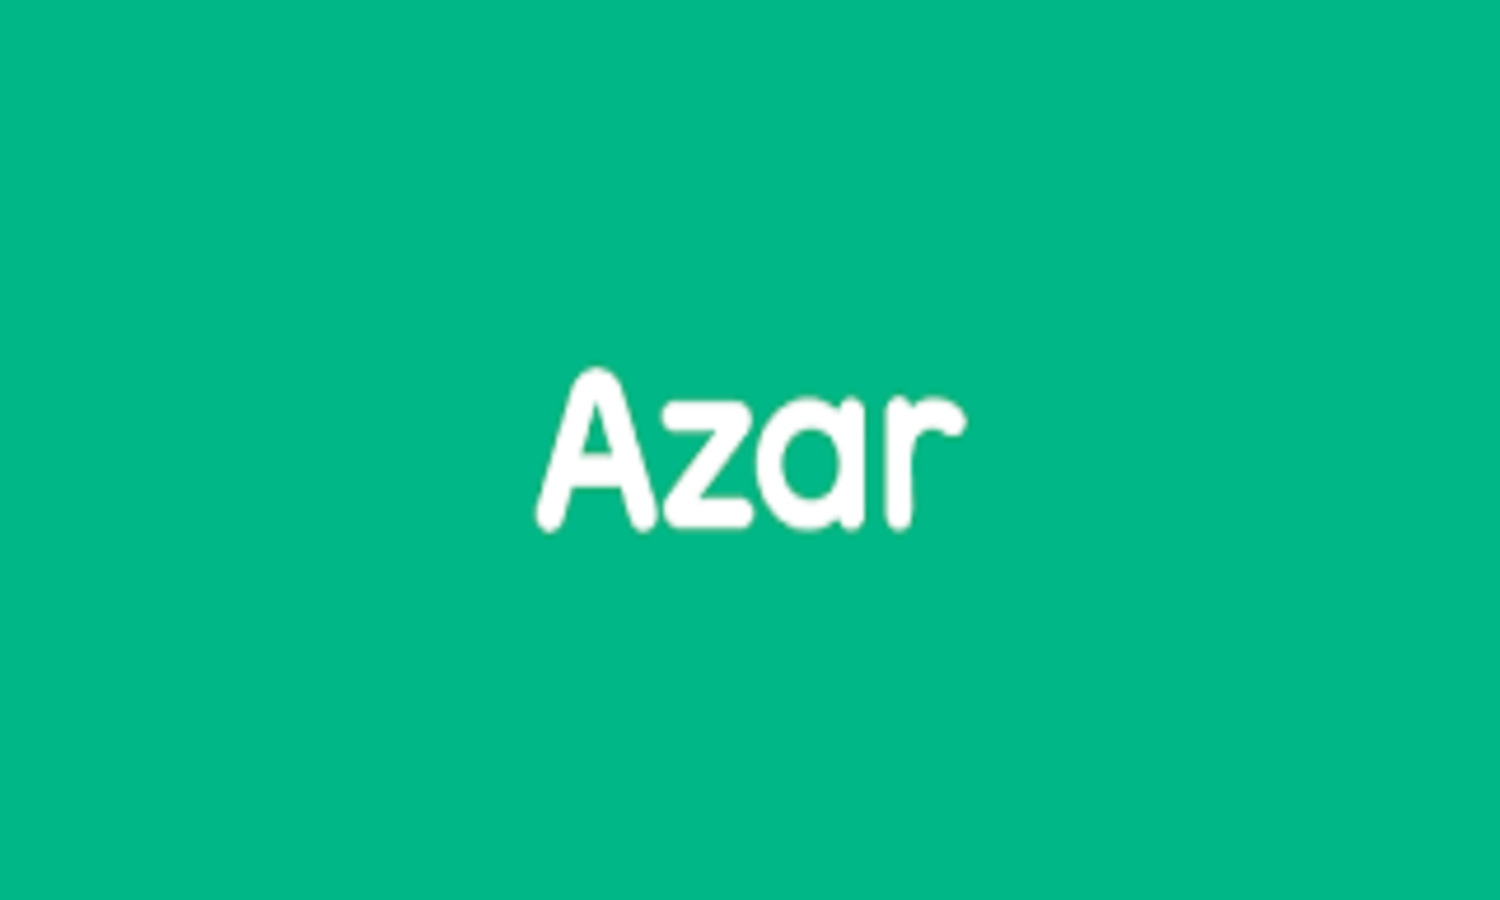   Azar يُفعل خاصية جديدة لمزيد من الخصوصية للمستخدمين